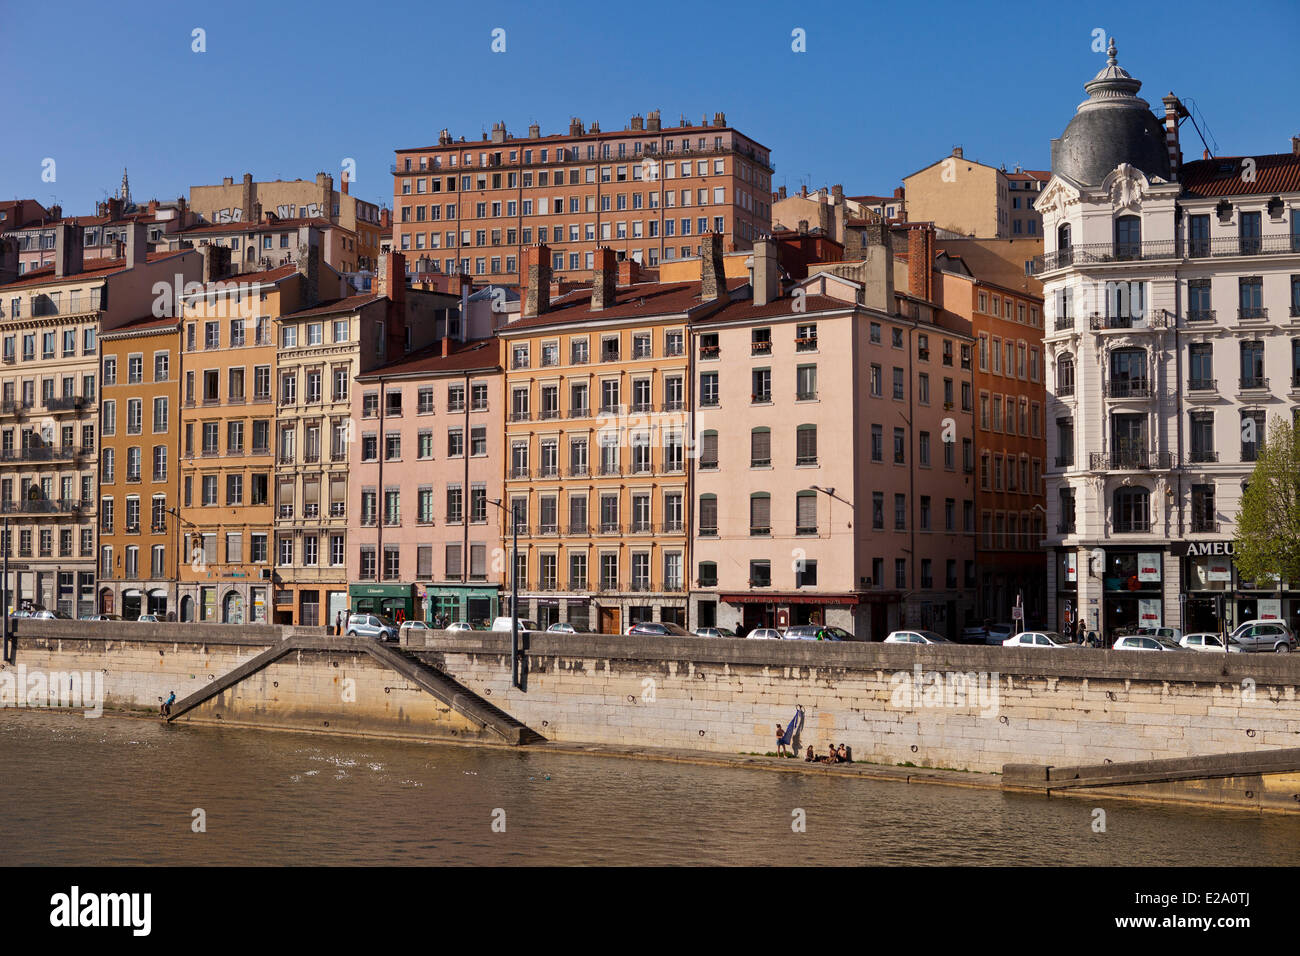 Francia, Ródano, Lyon, sitio histórico catalogado como Patrimonio Mundial por la UNESCO, la Croix Rousse District y el río Saône quays Foto de stock